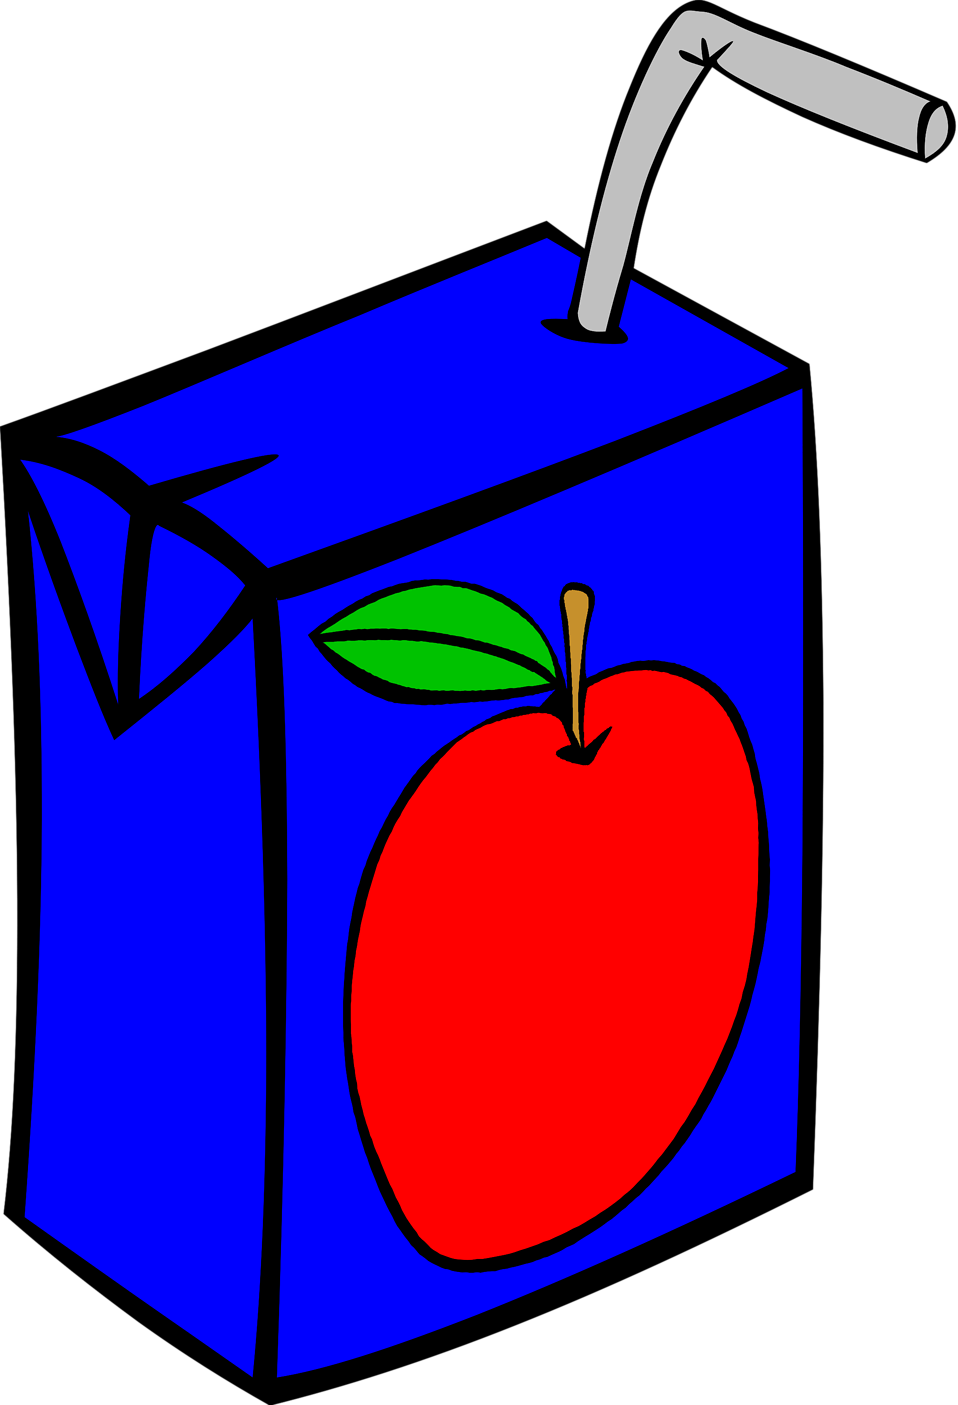 clip art apple juice. Keywords: Apple Juice, Apples,